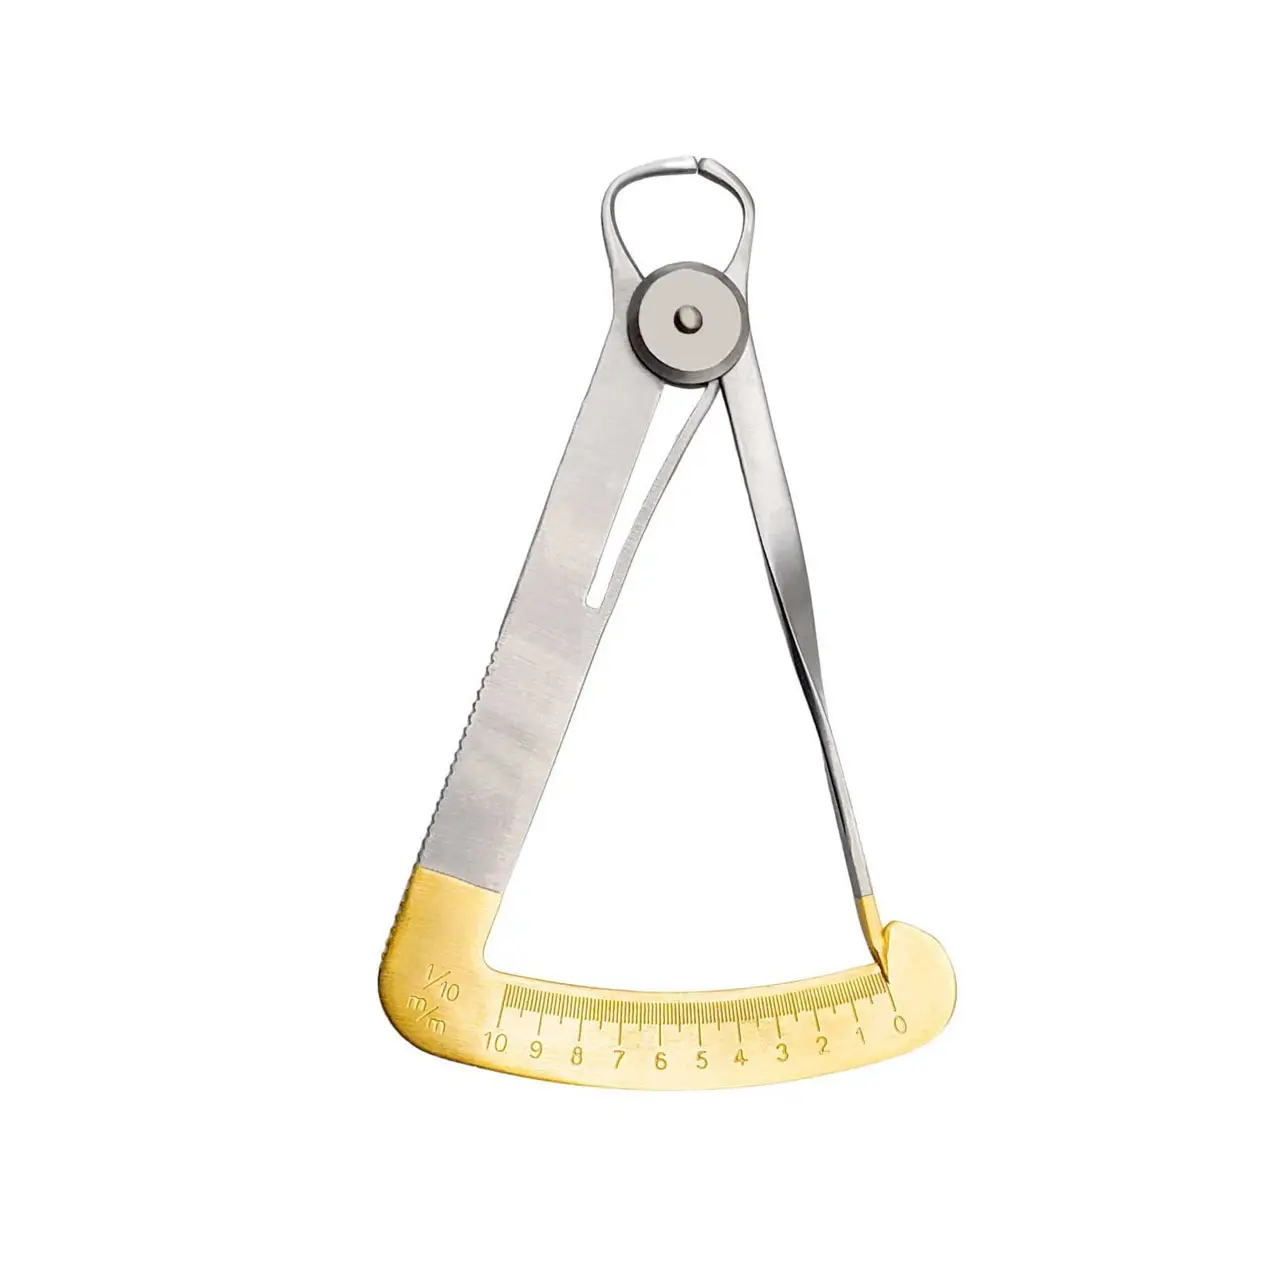 Calibrador de corona Dental Iwanson, instrumento quirúrgico de medición dorado, acero inoxidable CE